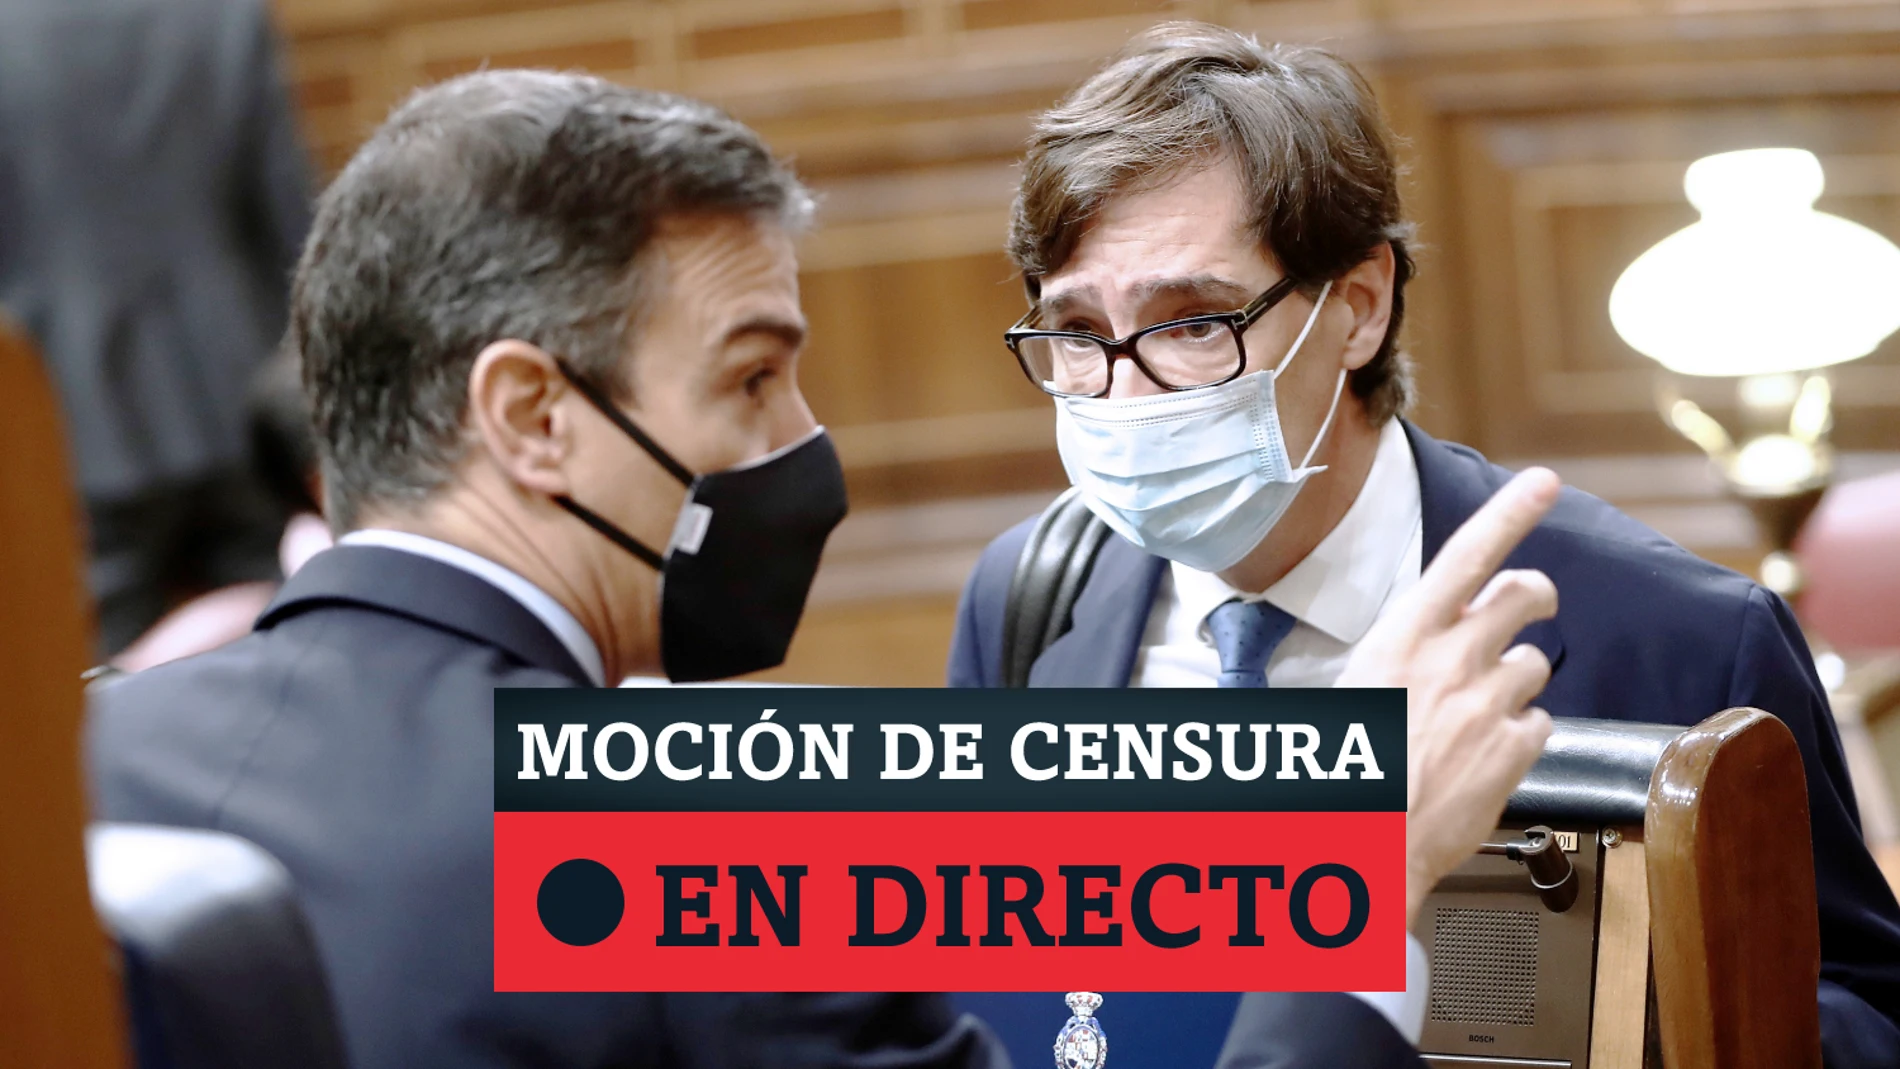 Moción de censura de Vox contra el Gobierno, Pedro Sánchez en directo